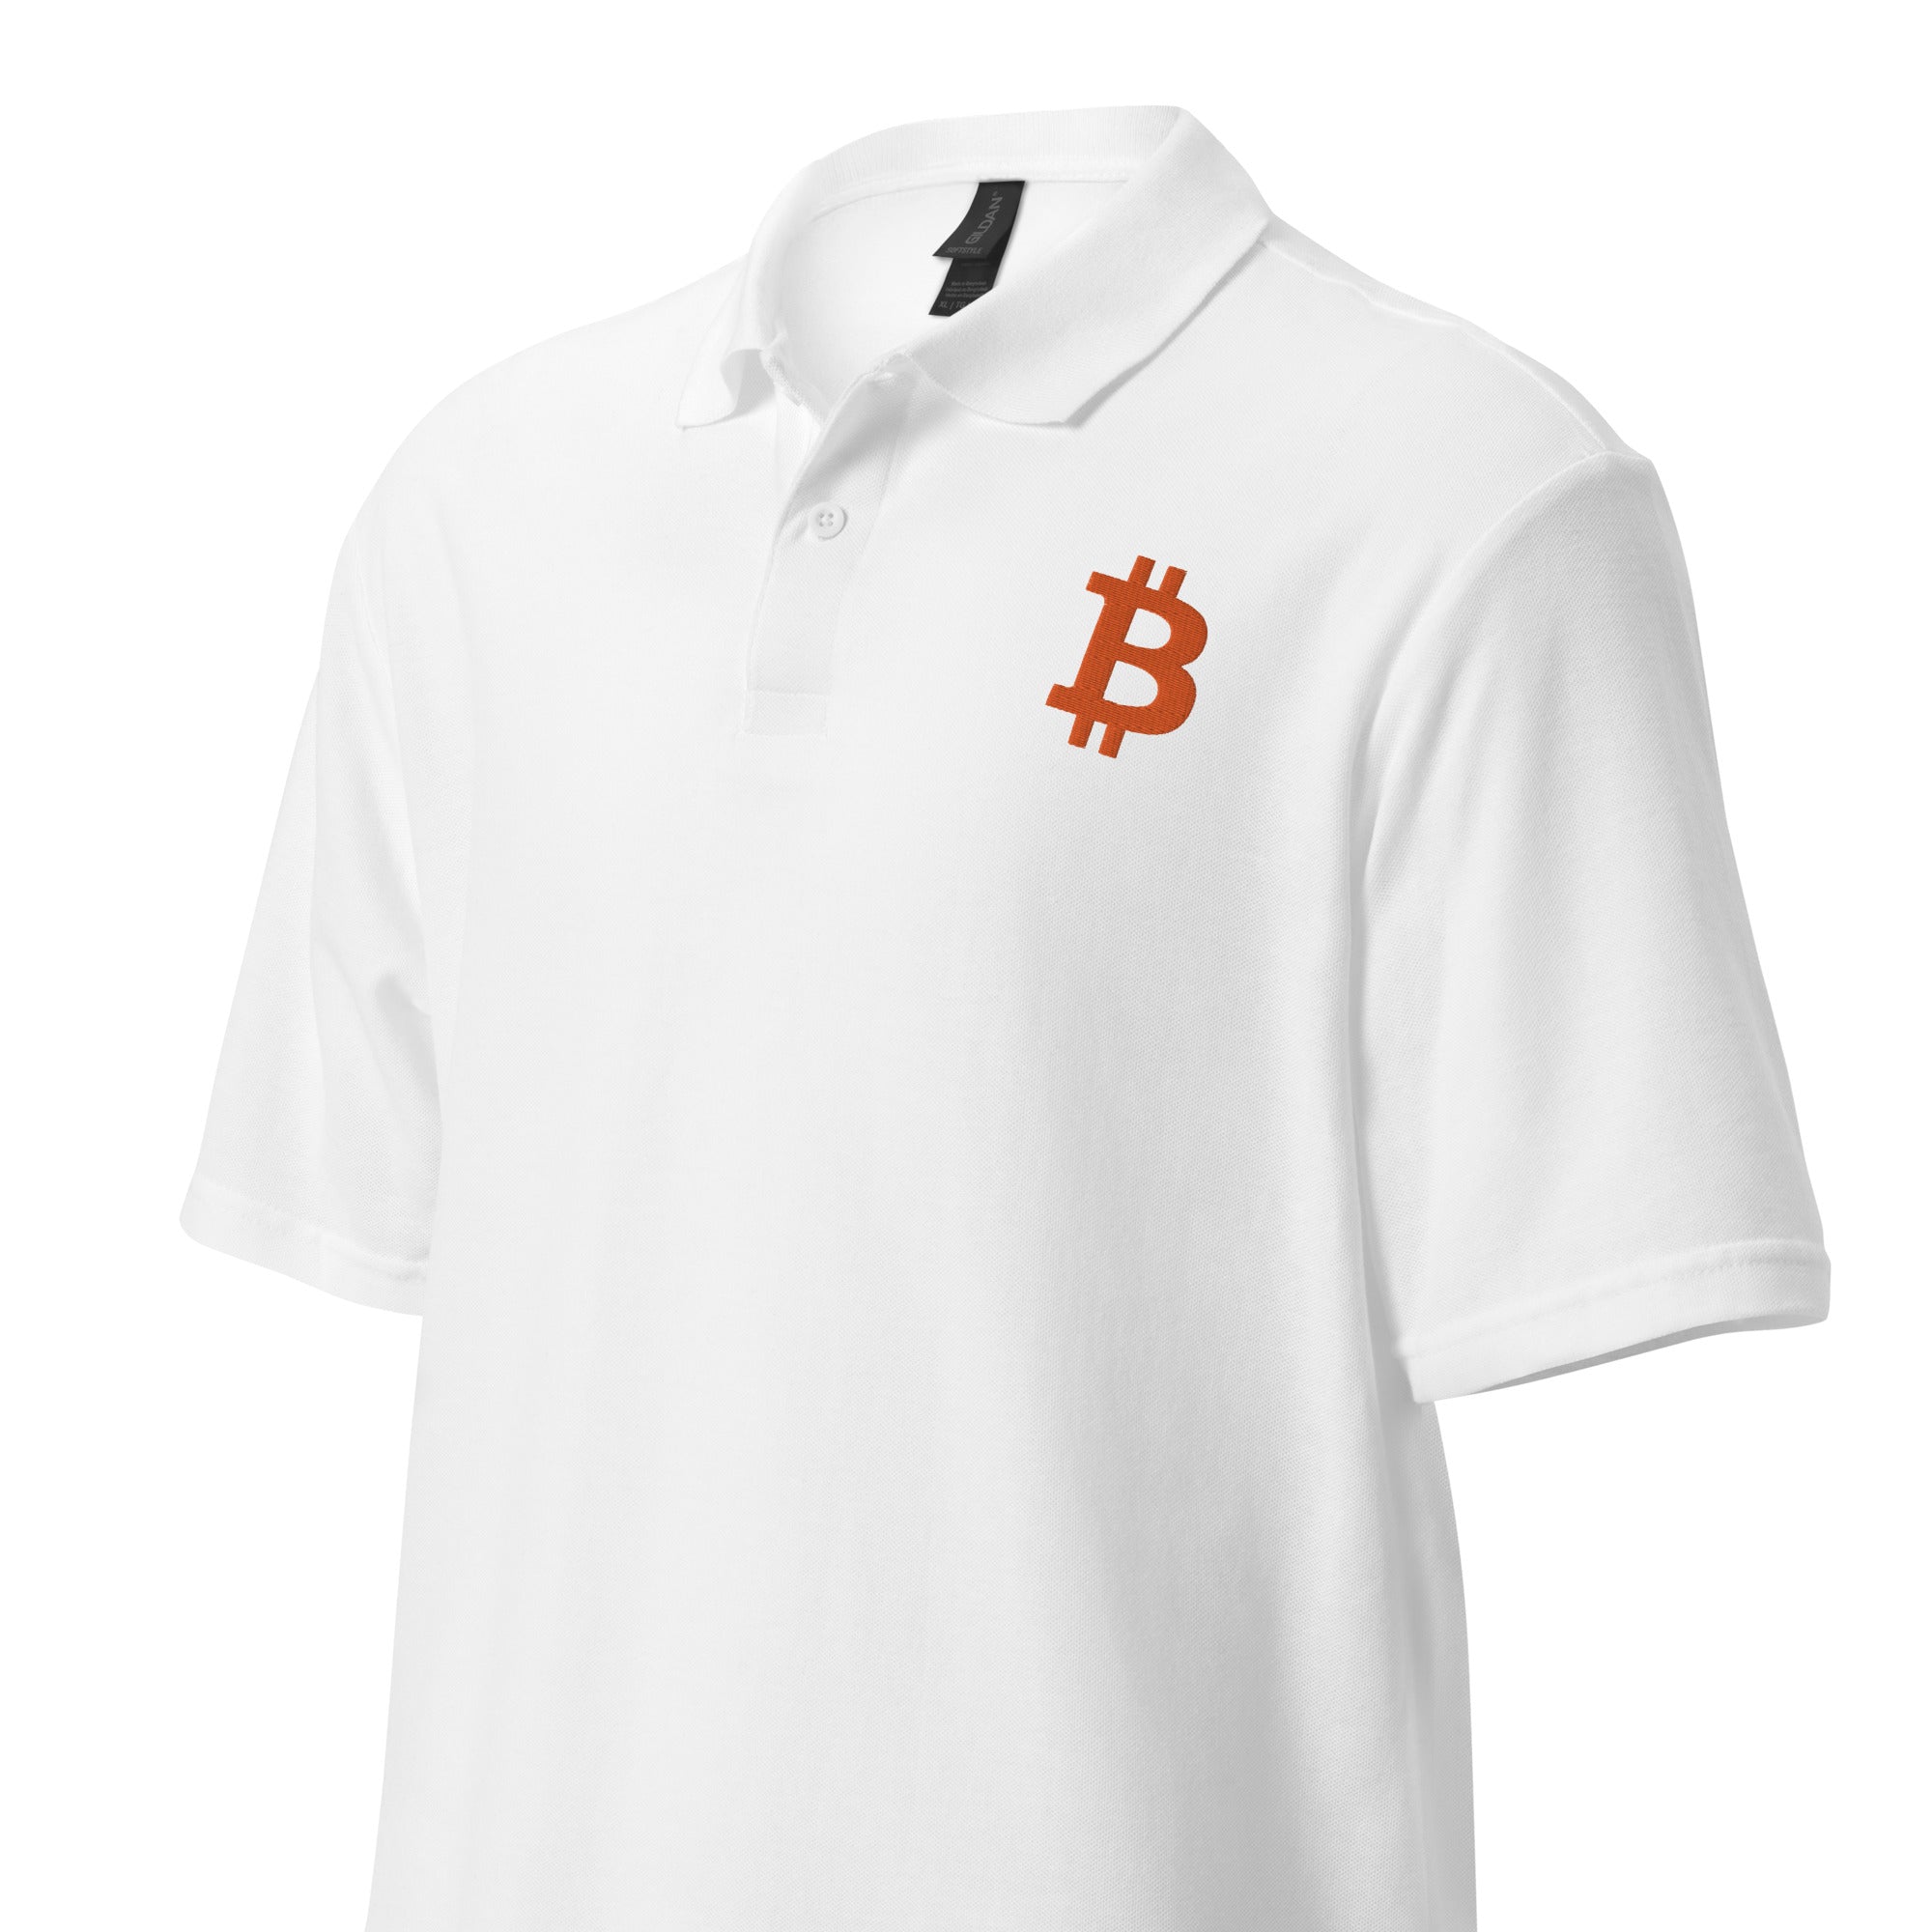 Unisex pique polo shirt Bitcoin